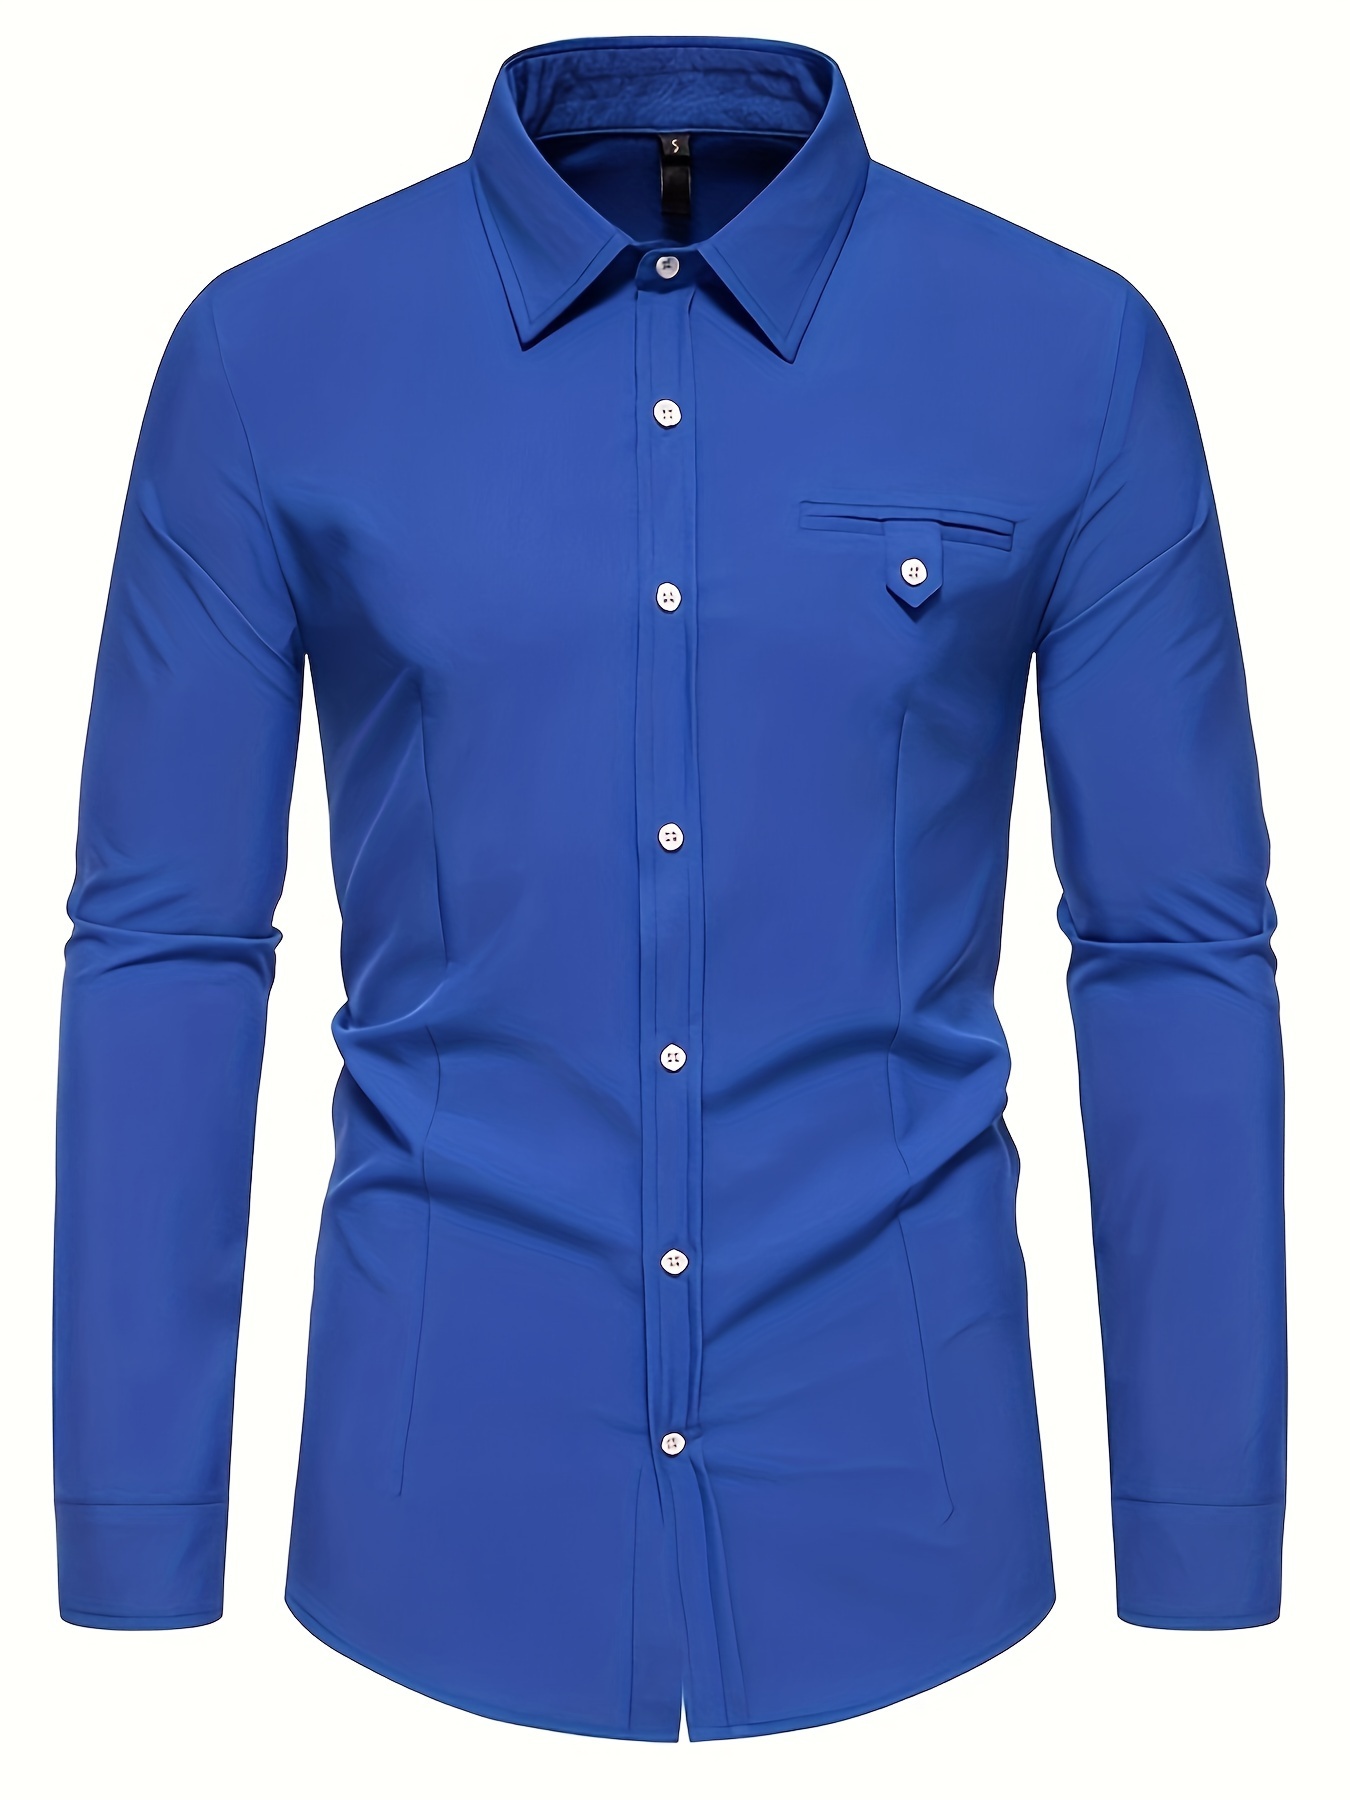 Camisa azul marino lisa para hombre de manga larga, ideal para